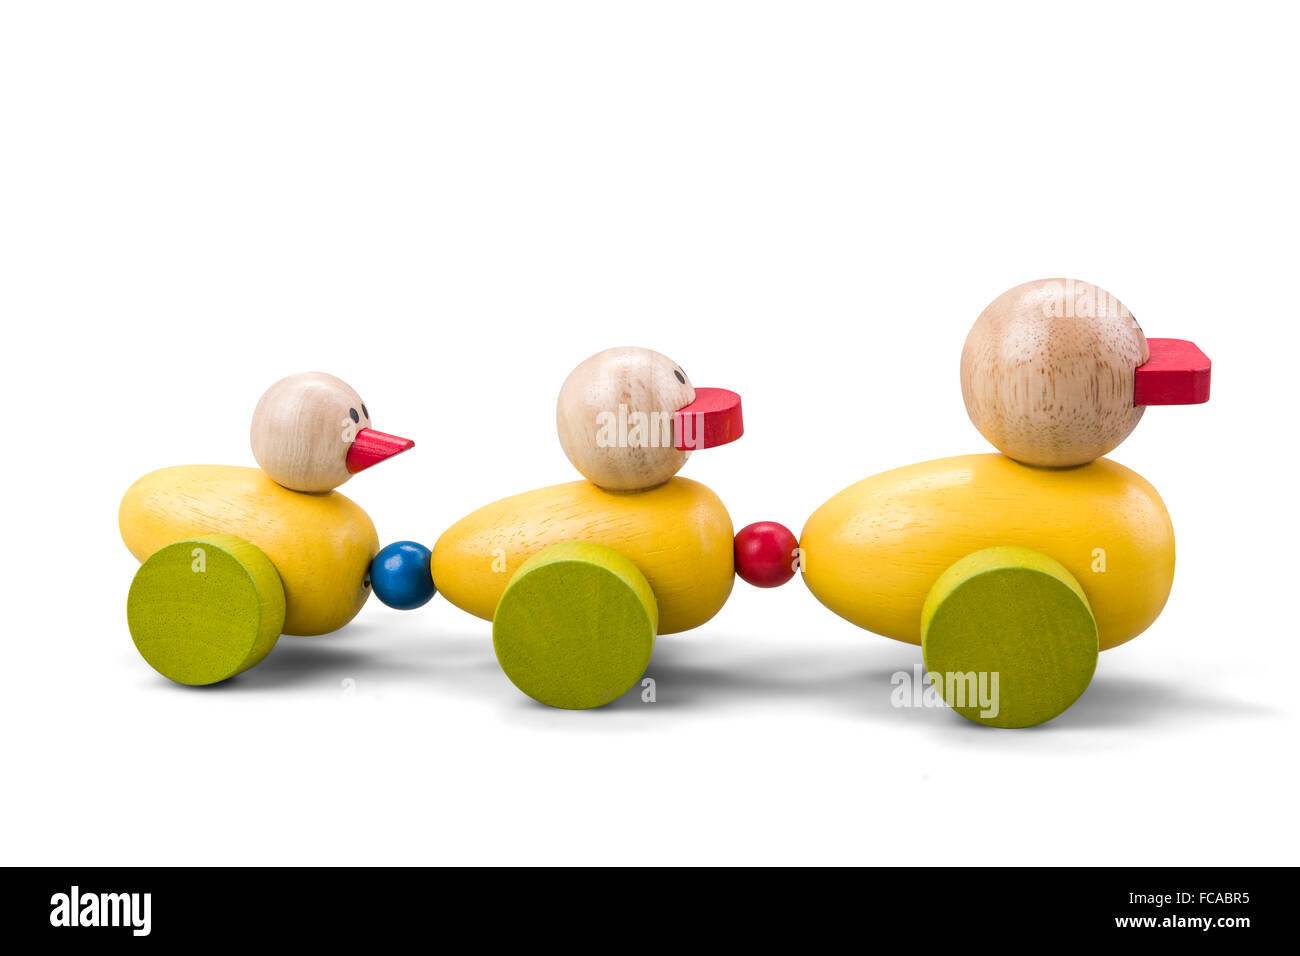 Canard en bois famille jouet train avec des pièces colorées isolated over white with clipping path Banque D'Images